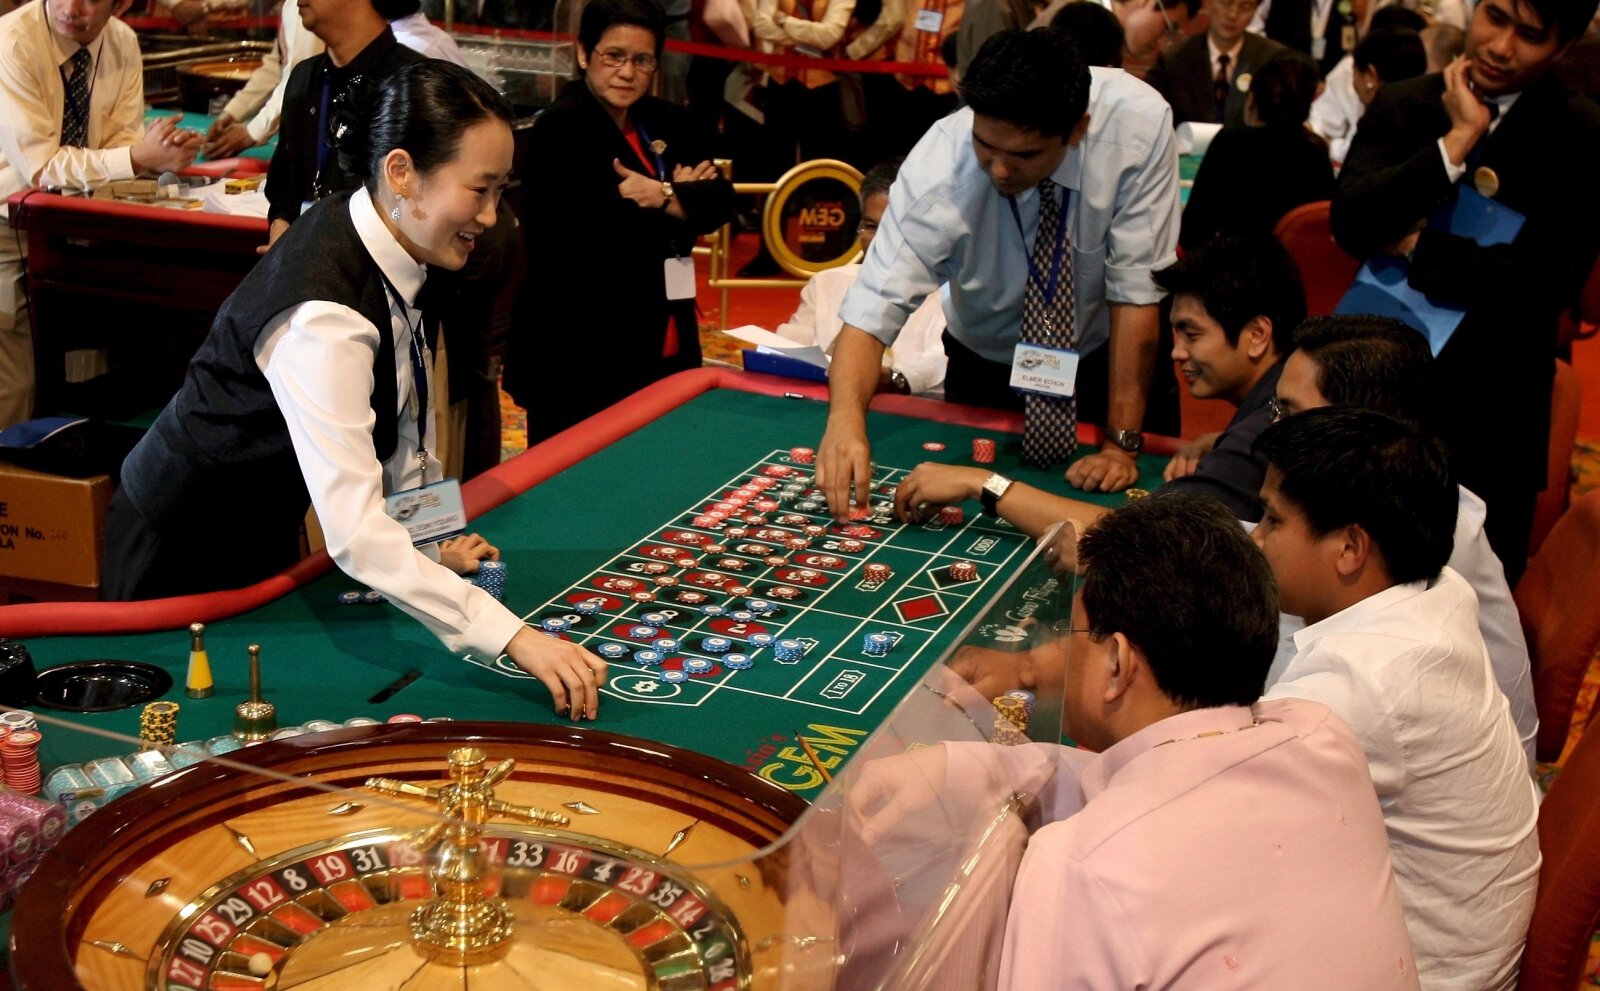 В Киргизии депутаты предложили запретить казино спустя два года после легализации, так как игорный бизнес оказался финансово неэффективным